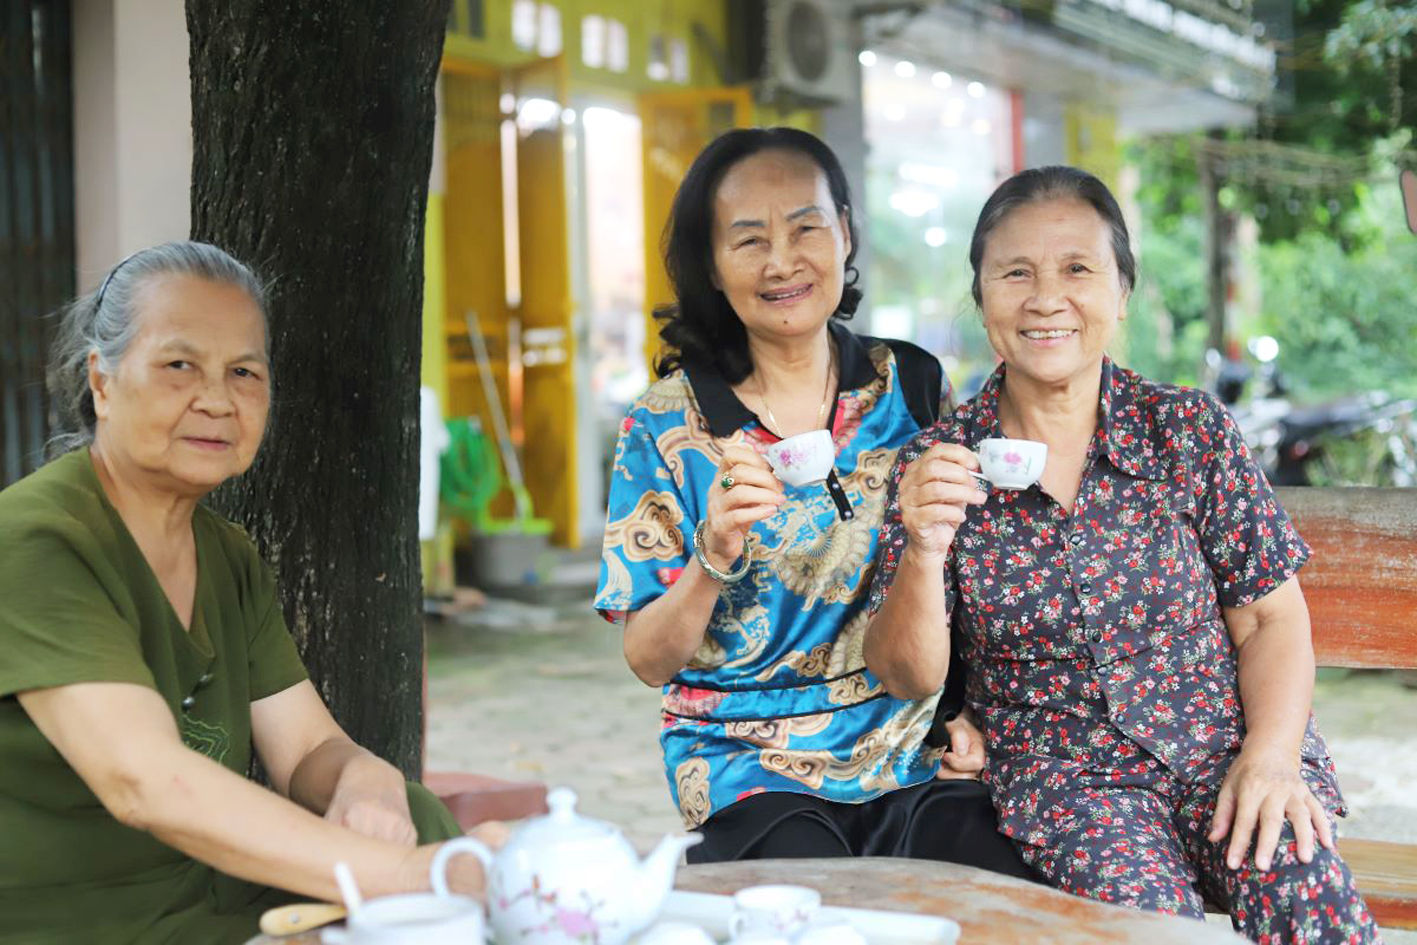 Bà Lê Thị Liên (giữa) trò chuyện vui vẻ cùng các bạn già bên ấm trà